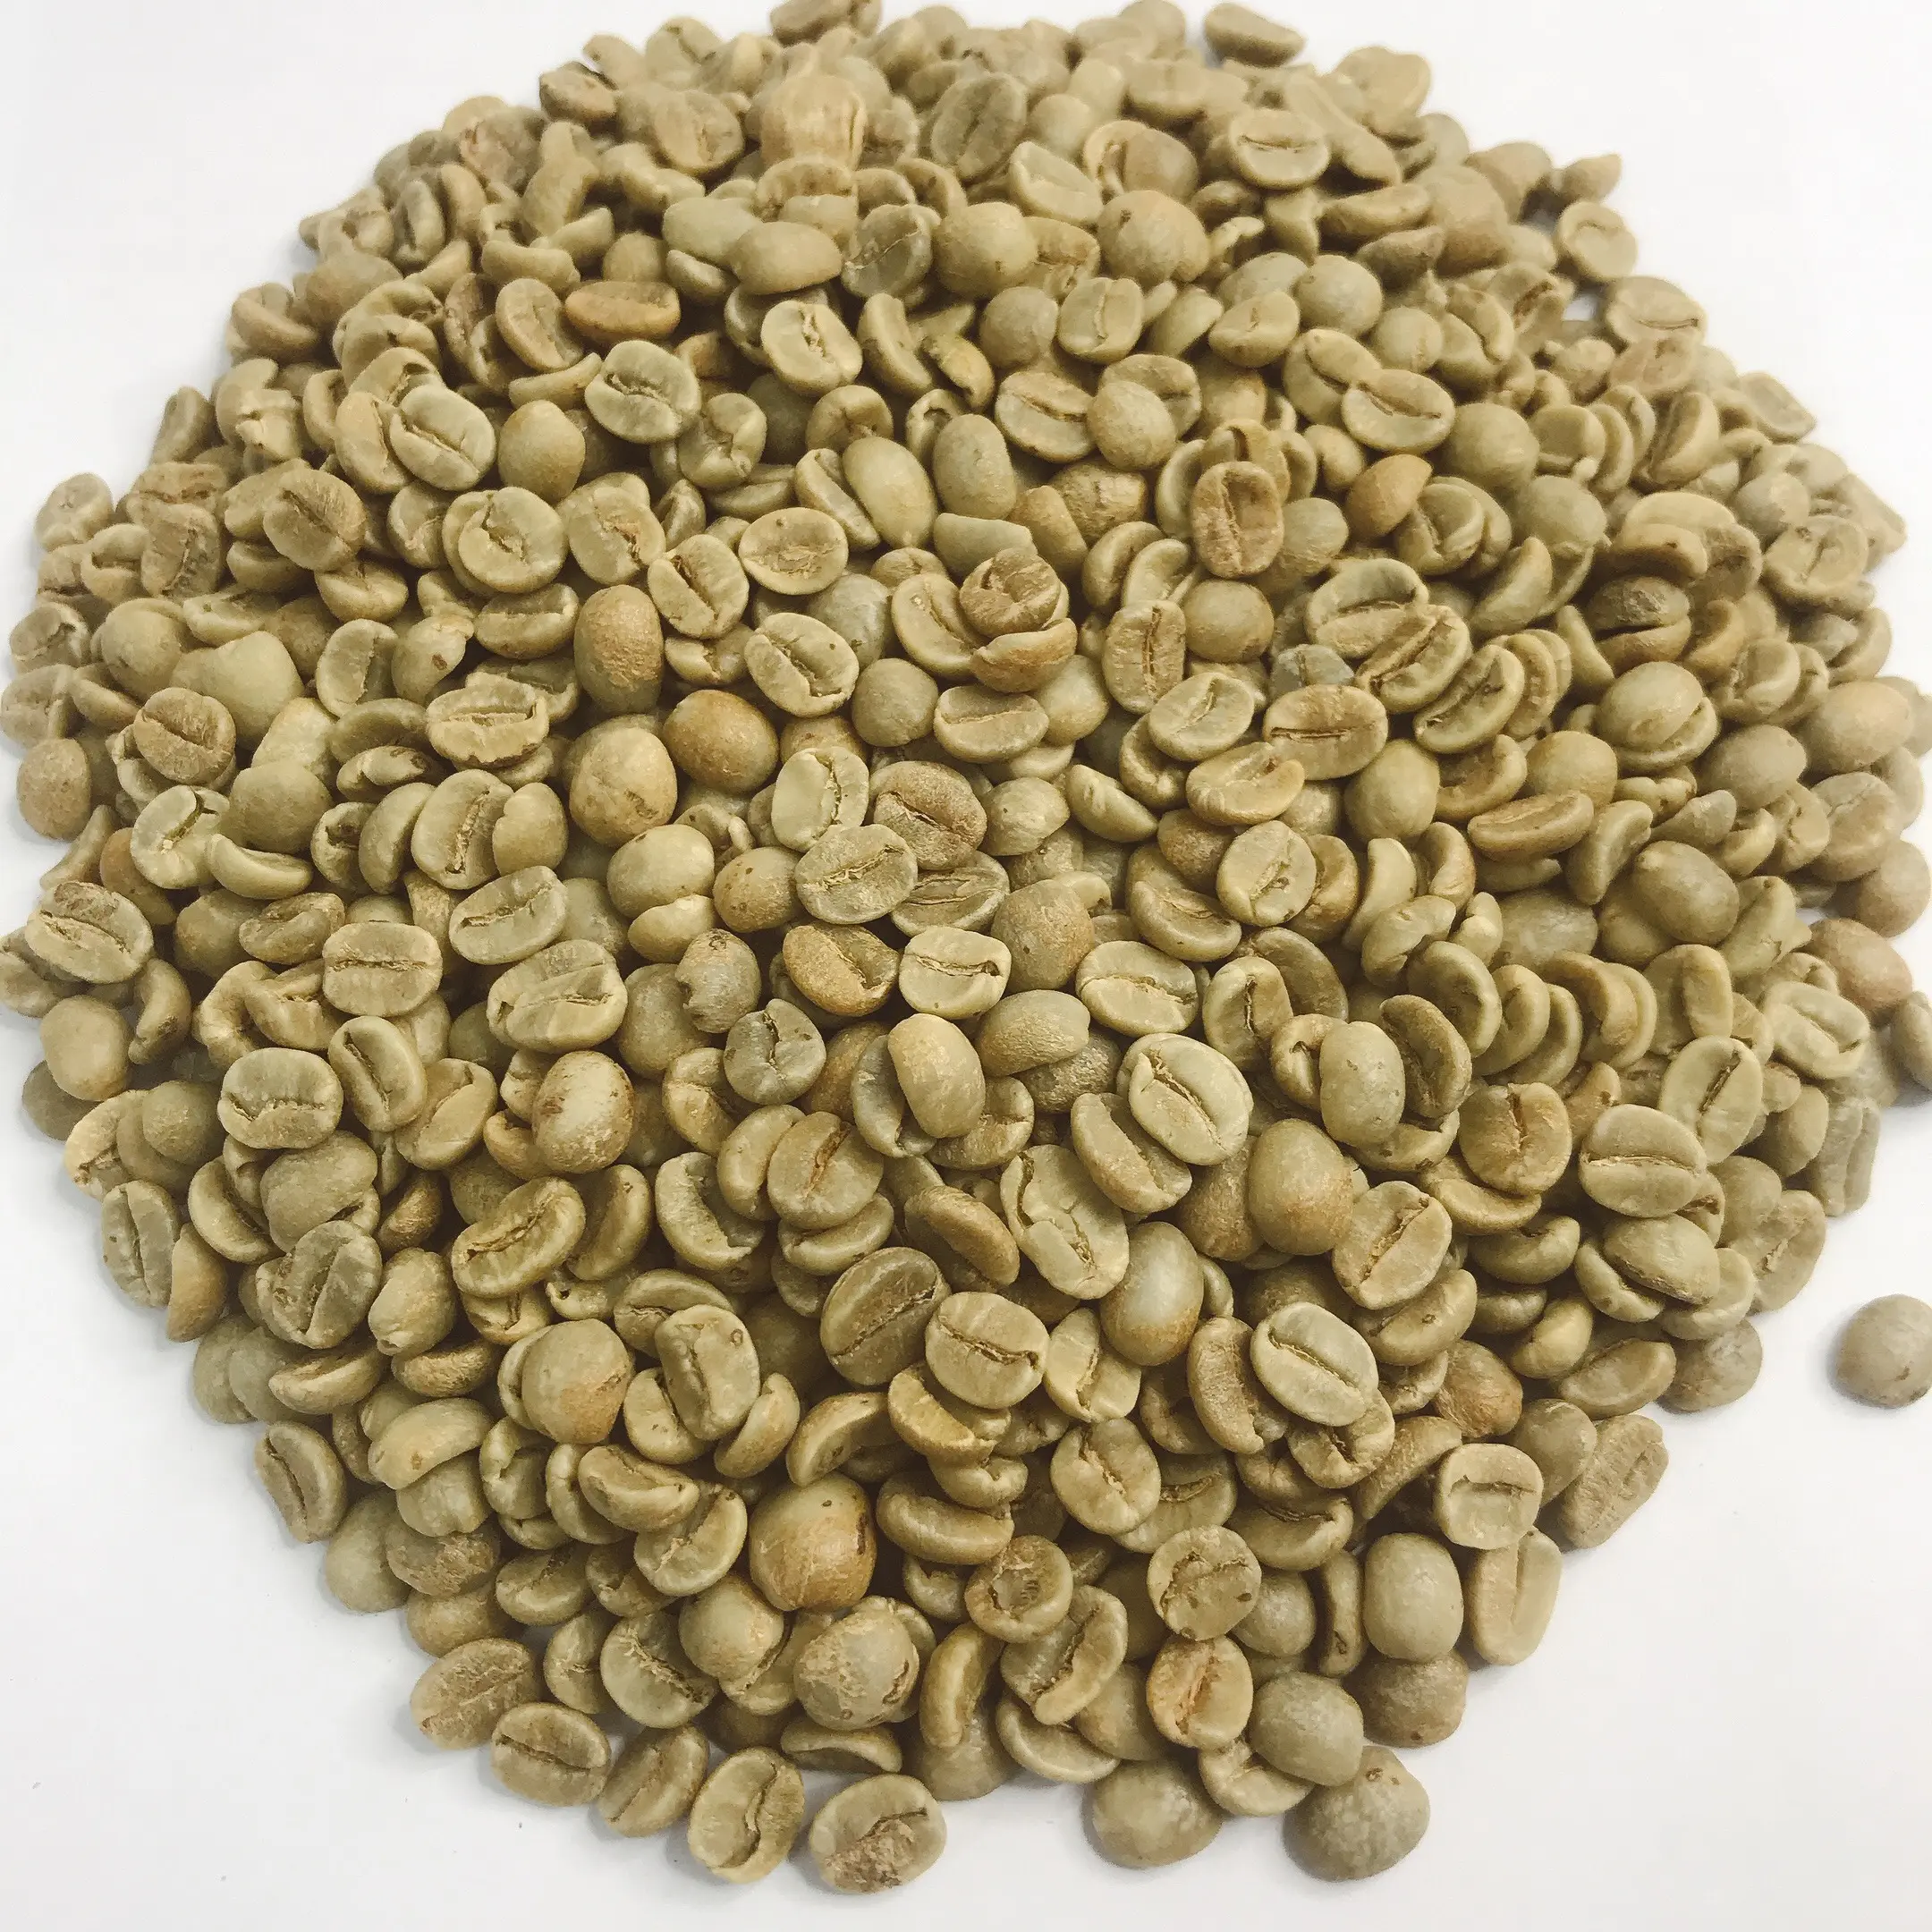 Deteh COFFEE Премиум жареный кофе-зеленый кофе арабика кофе из Вьетнама высококачественный 100% натуральный готов к отправке около